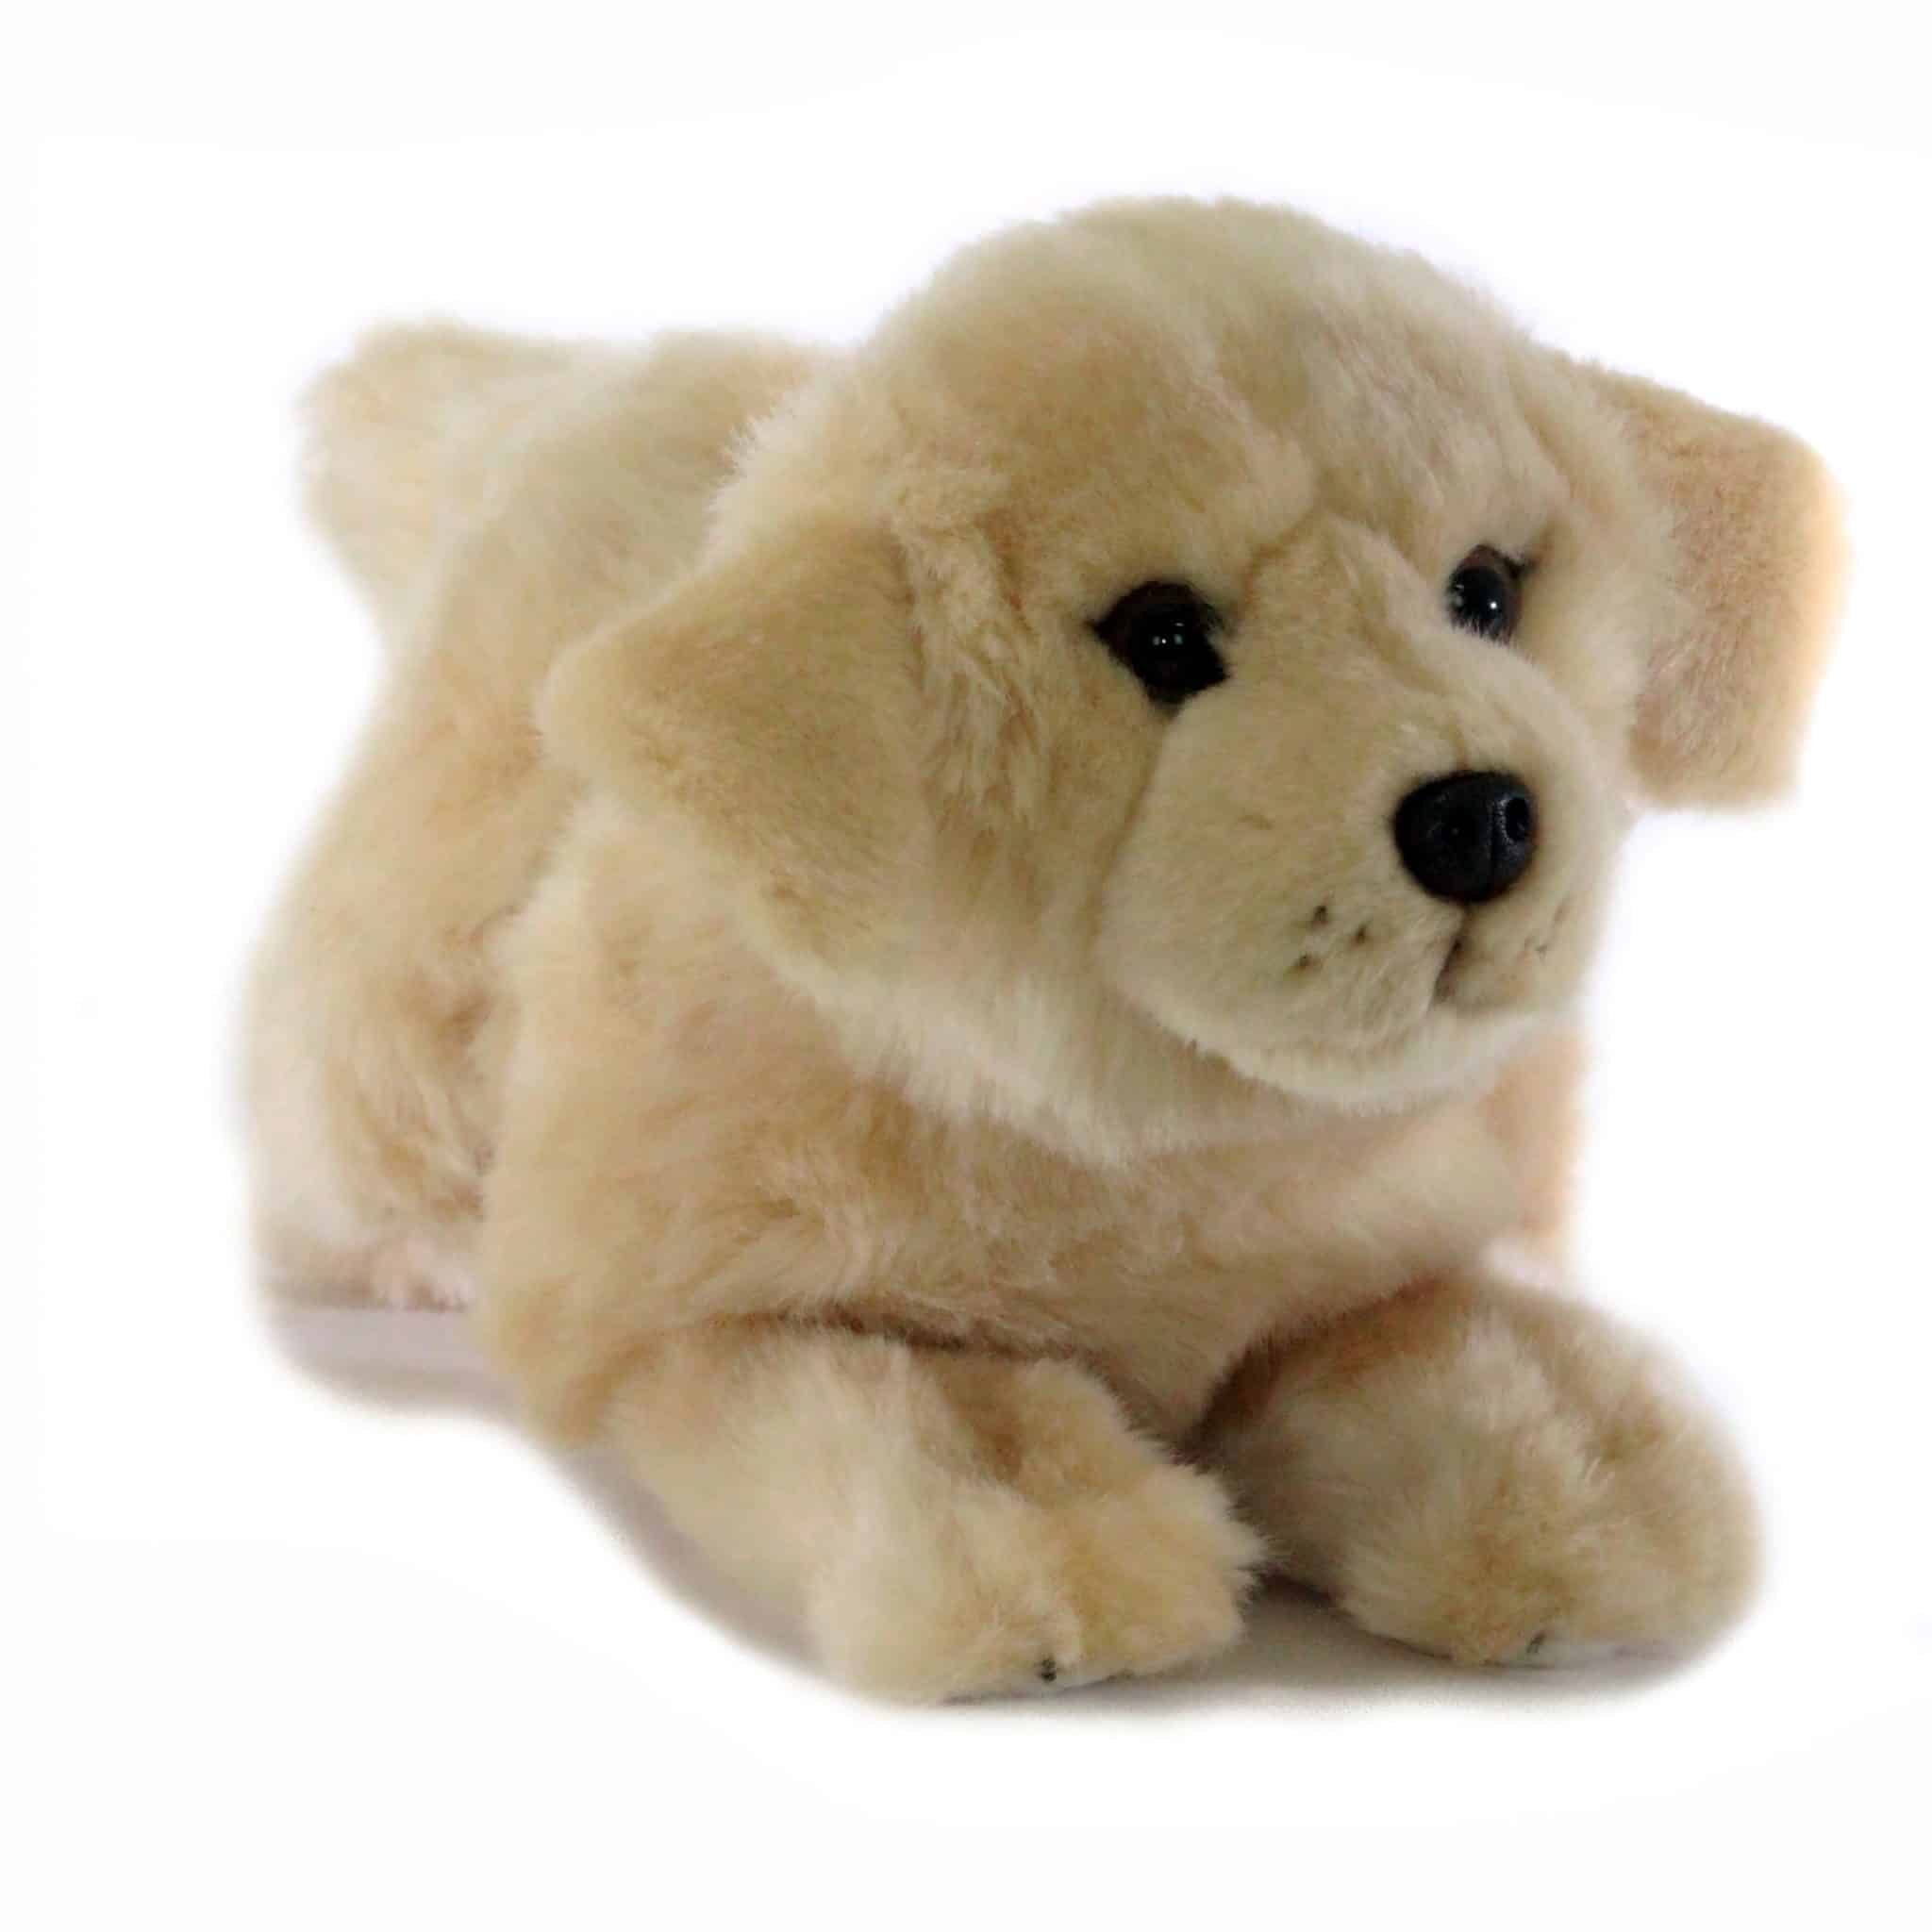 Golden retriever puppy plush toy, soft plush pupy dog, plush soft toy